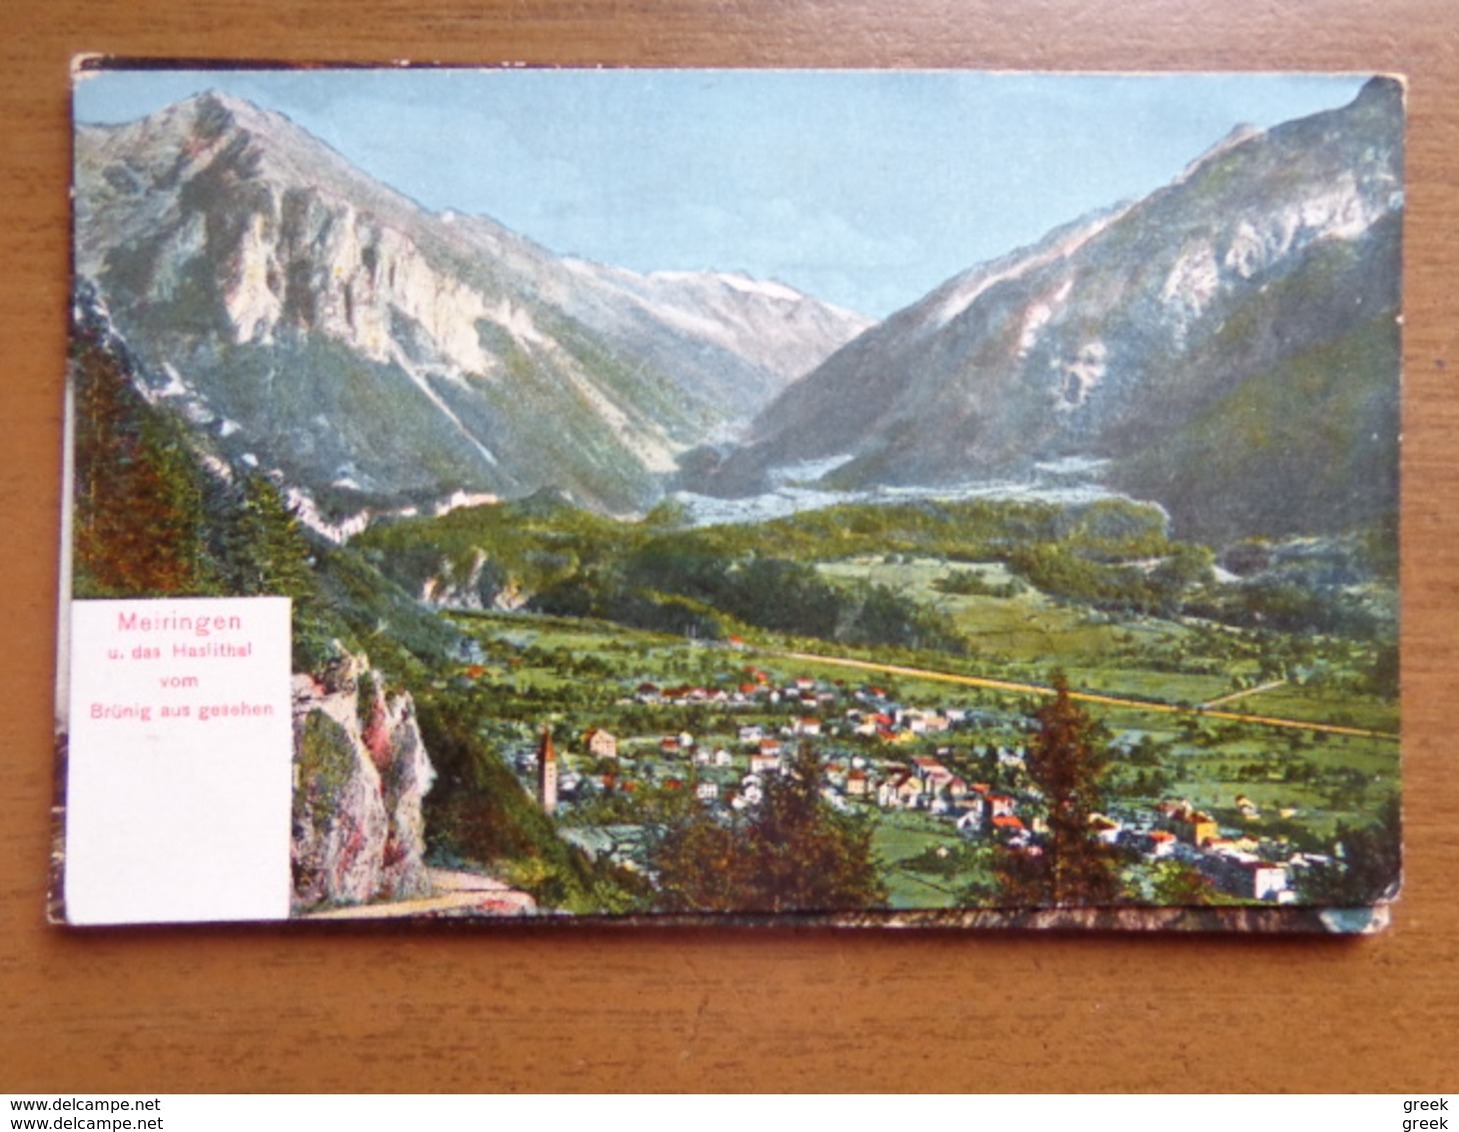 KOOPJE / Doos postkaarten (3kg057) met oa: Luxemburg (oude) - Griekenland en vele andere landen en thema's (zie foto's)